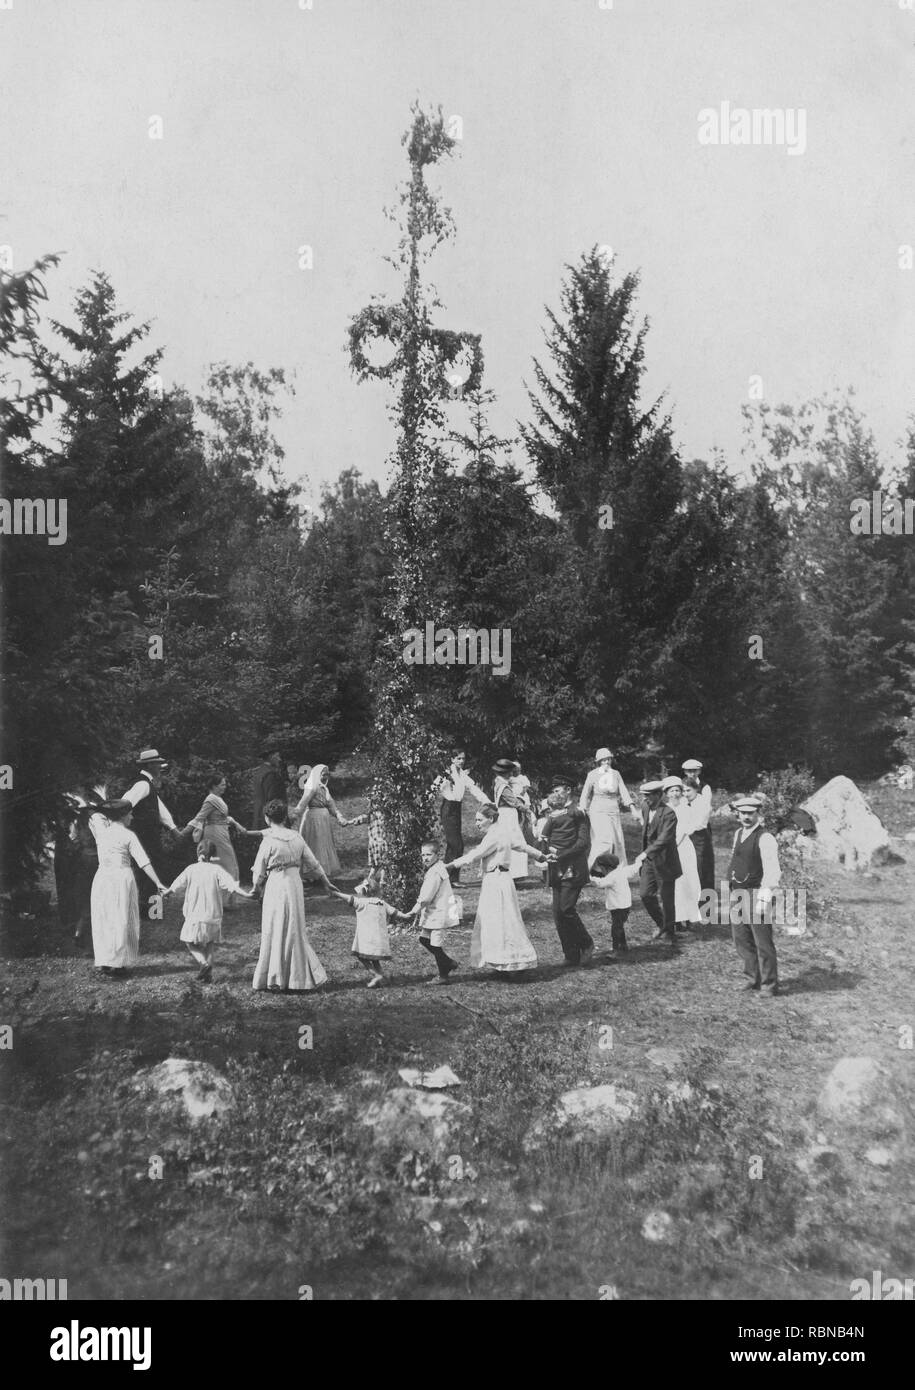 Mittsommer Tradition in Schweden. Als Teil der Festlichkeiten einen Maibaum ist auferstanden, Männer, Frauen und Kinder versammeln sich um ihn zu tanzen. Schweden zu Beginn des 20. Jahrhunderts. Stockfoto